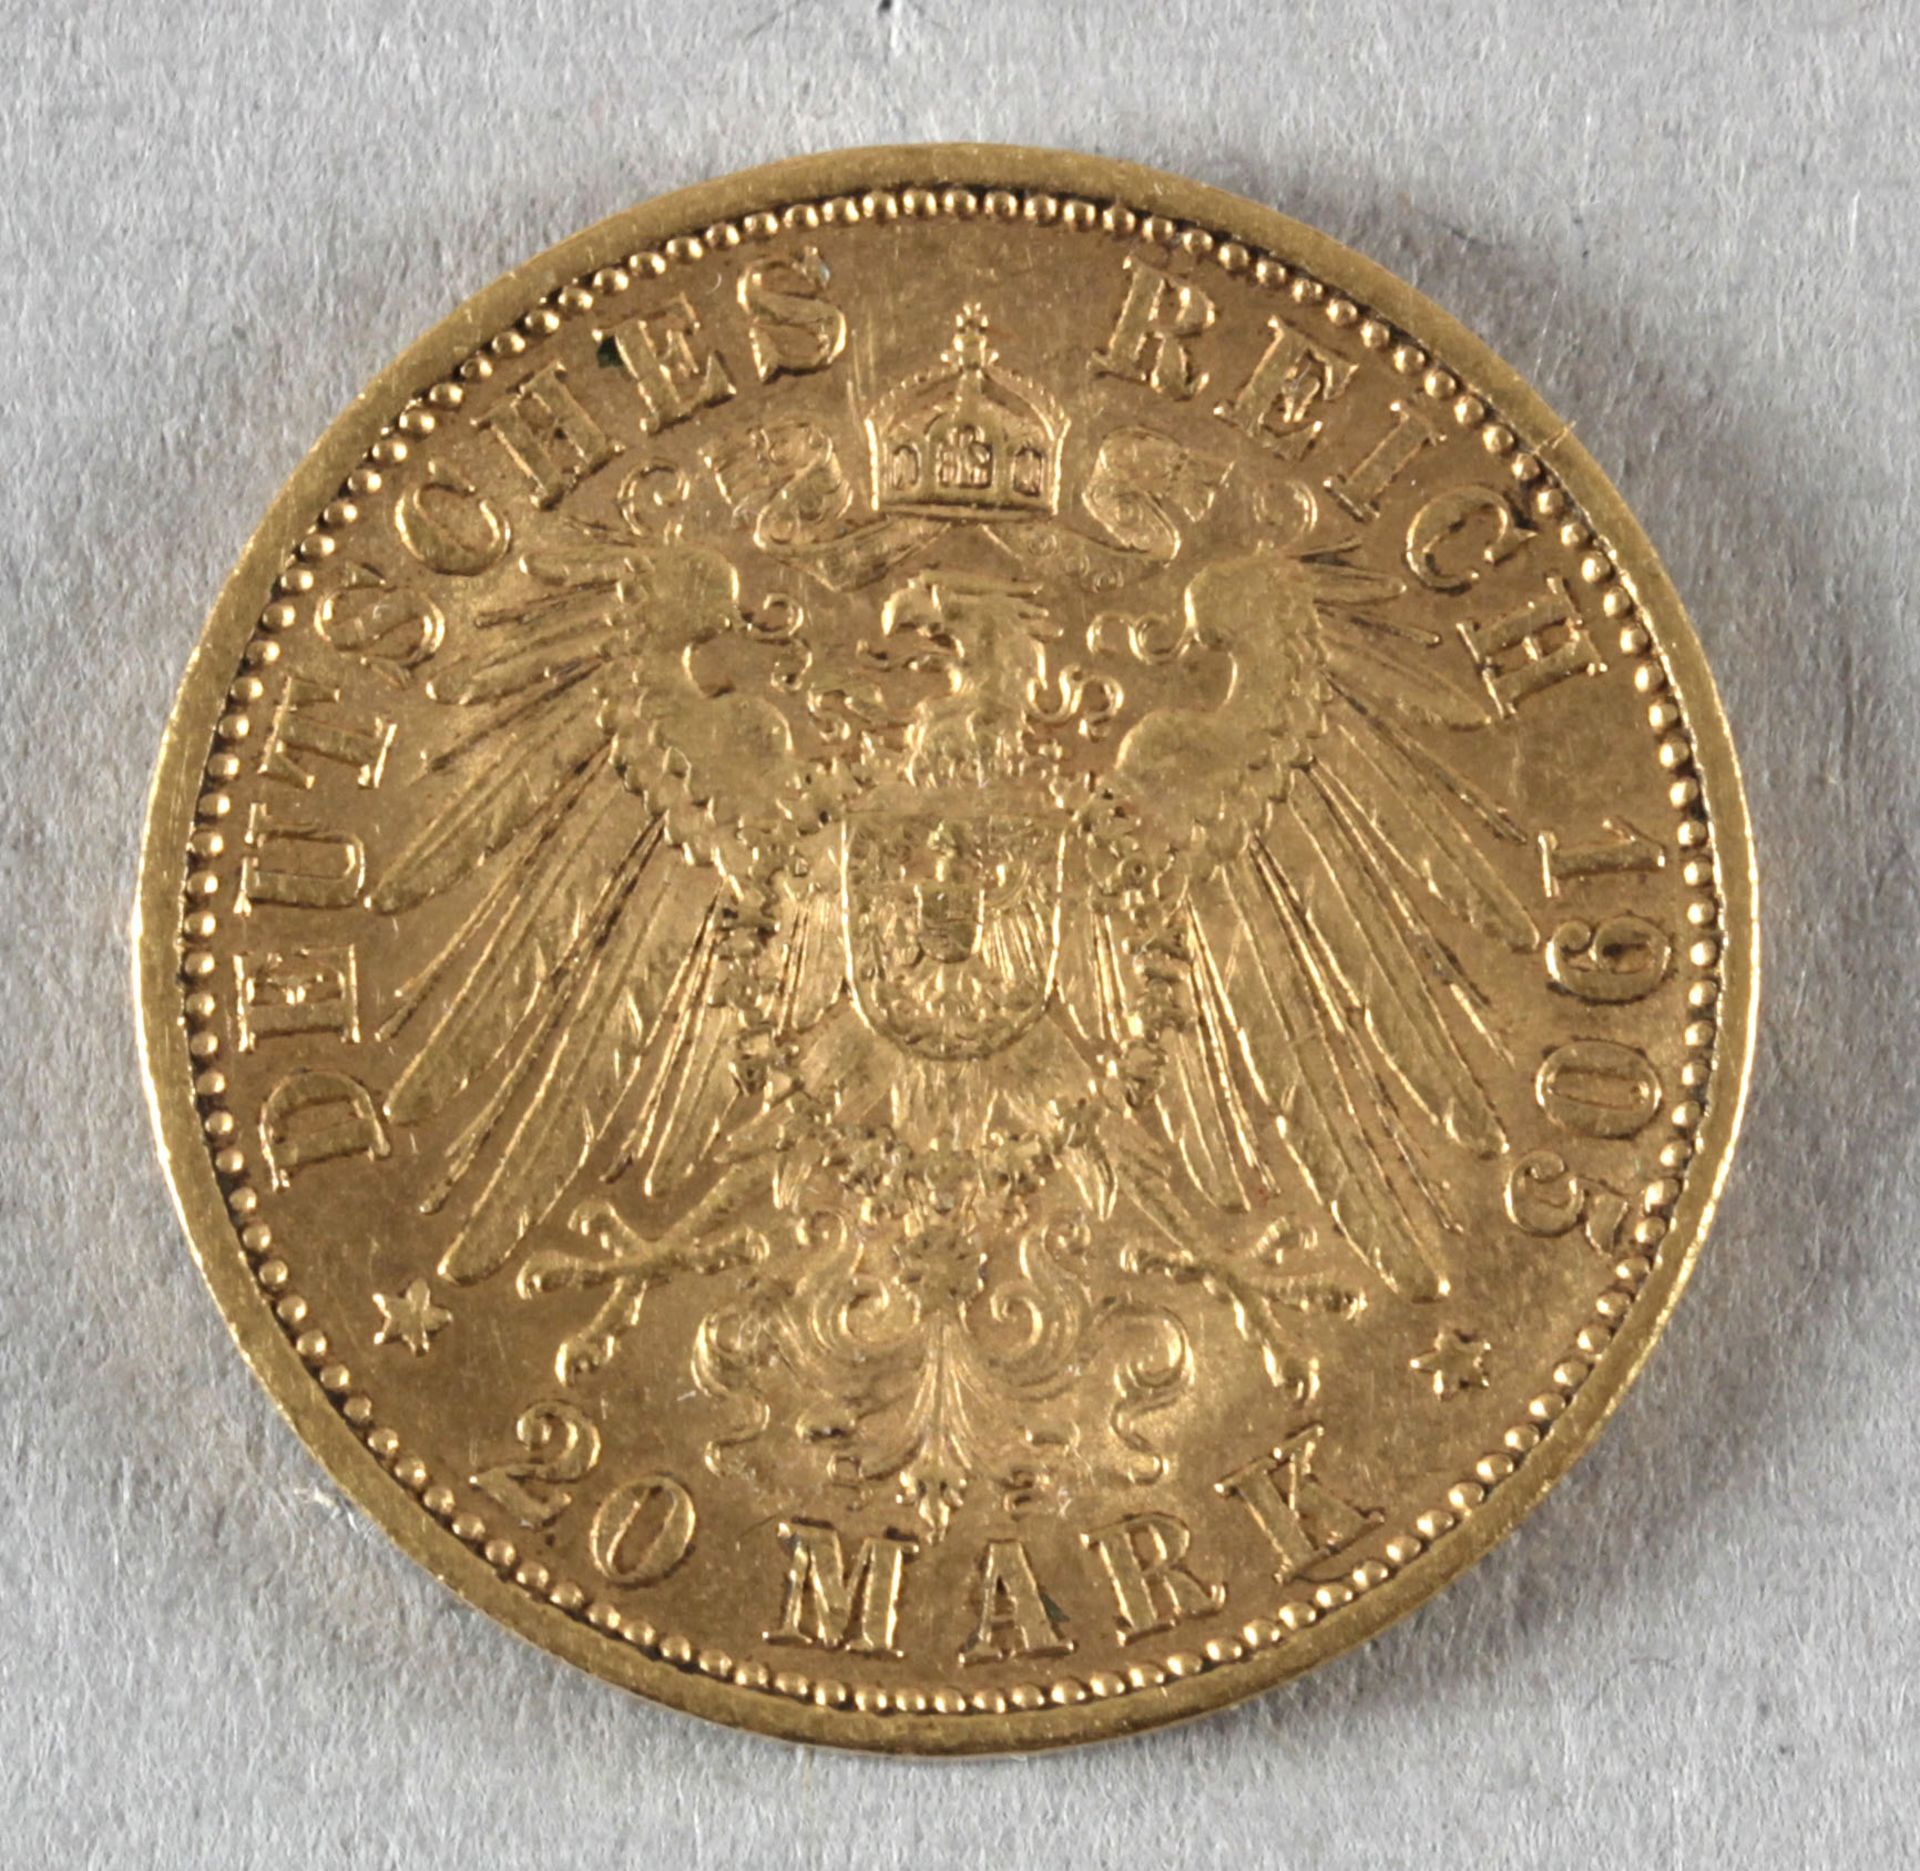 Goldmünze, 20 Mark, dt. Kaiserreich (Bayern), 1905 D, Otto - Image 2 of 2